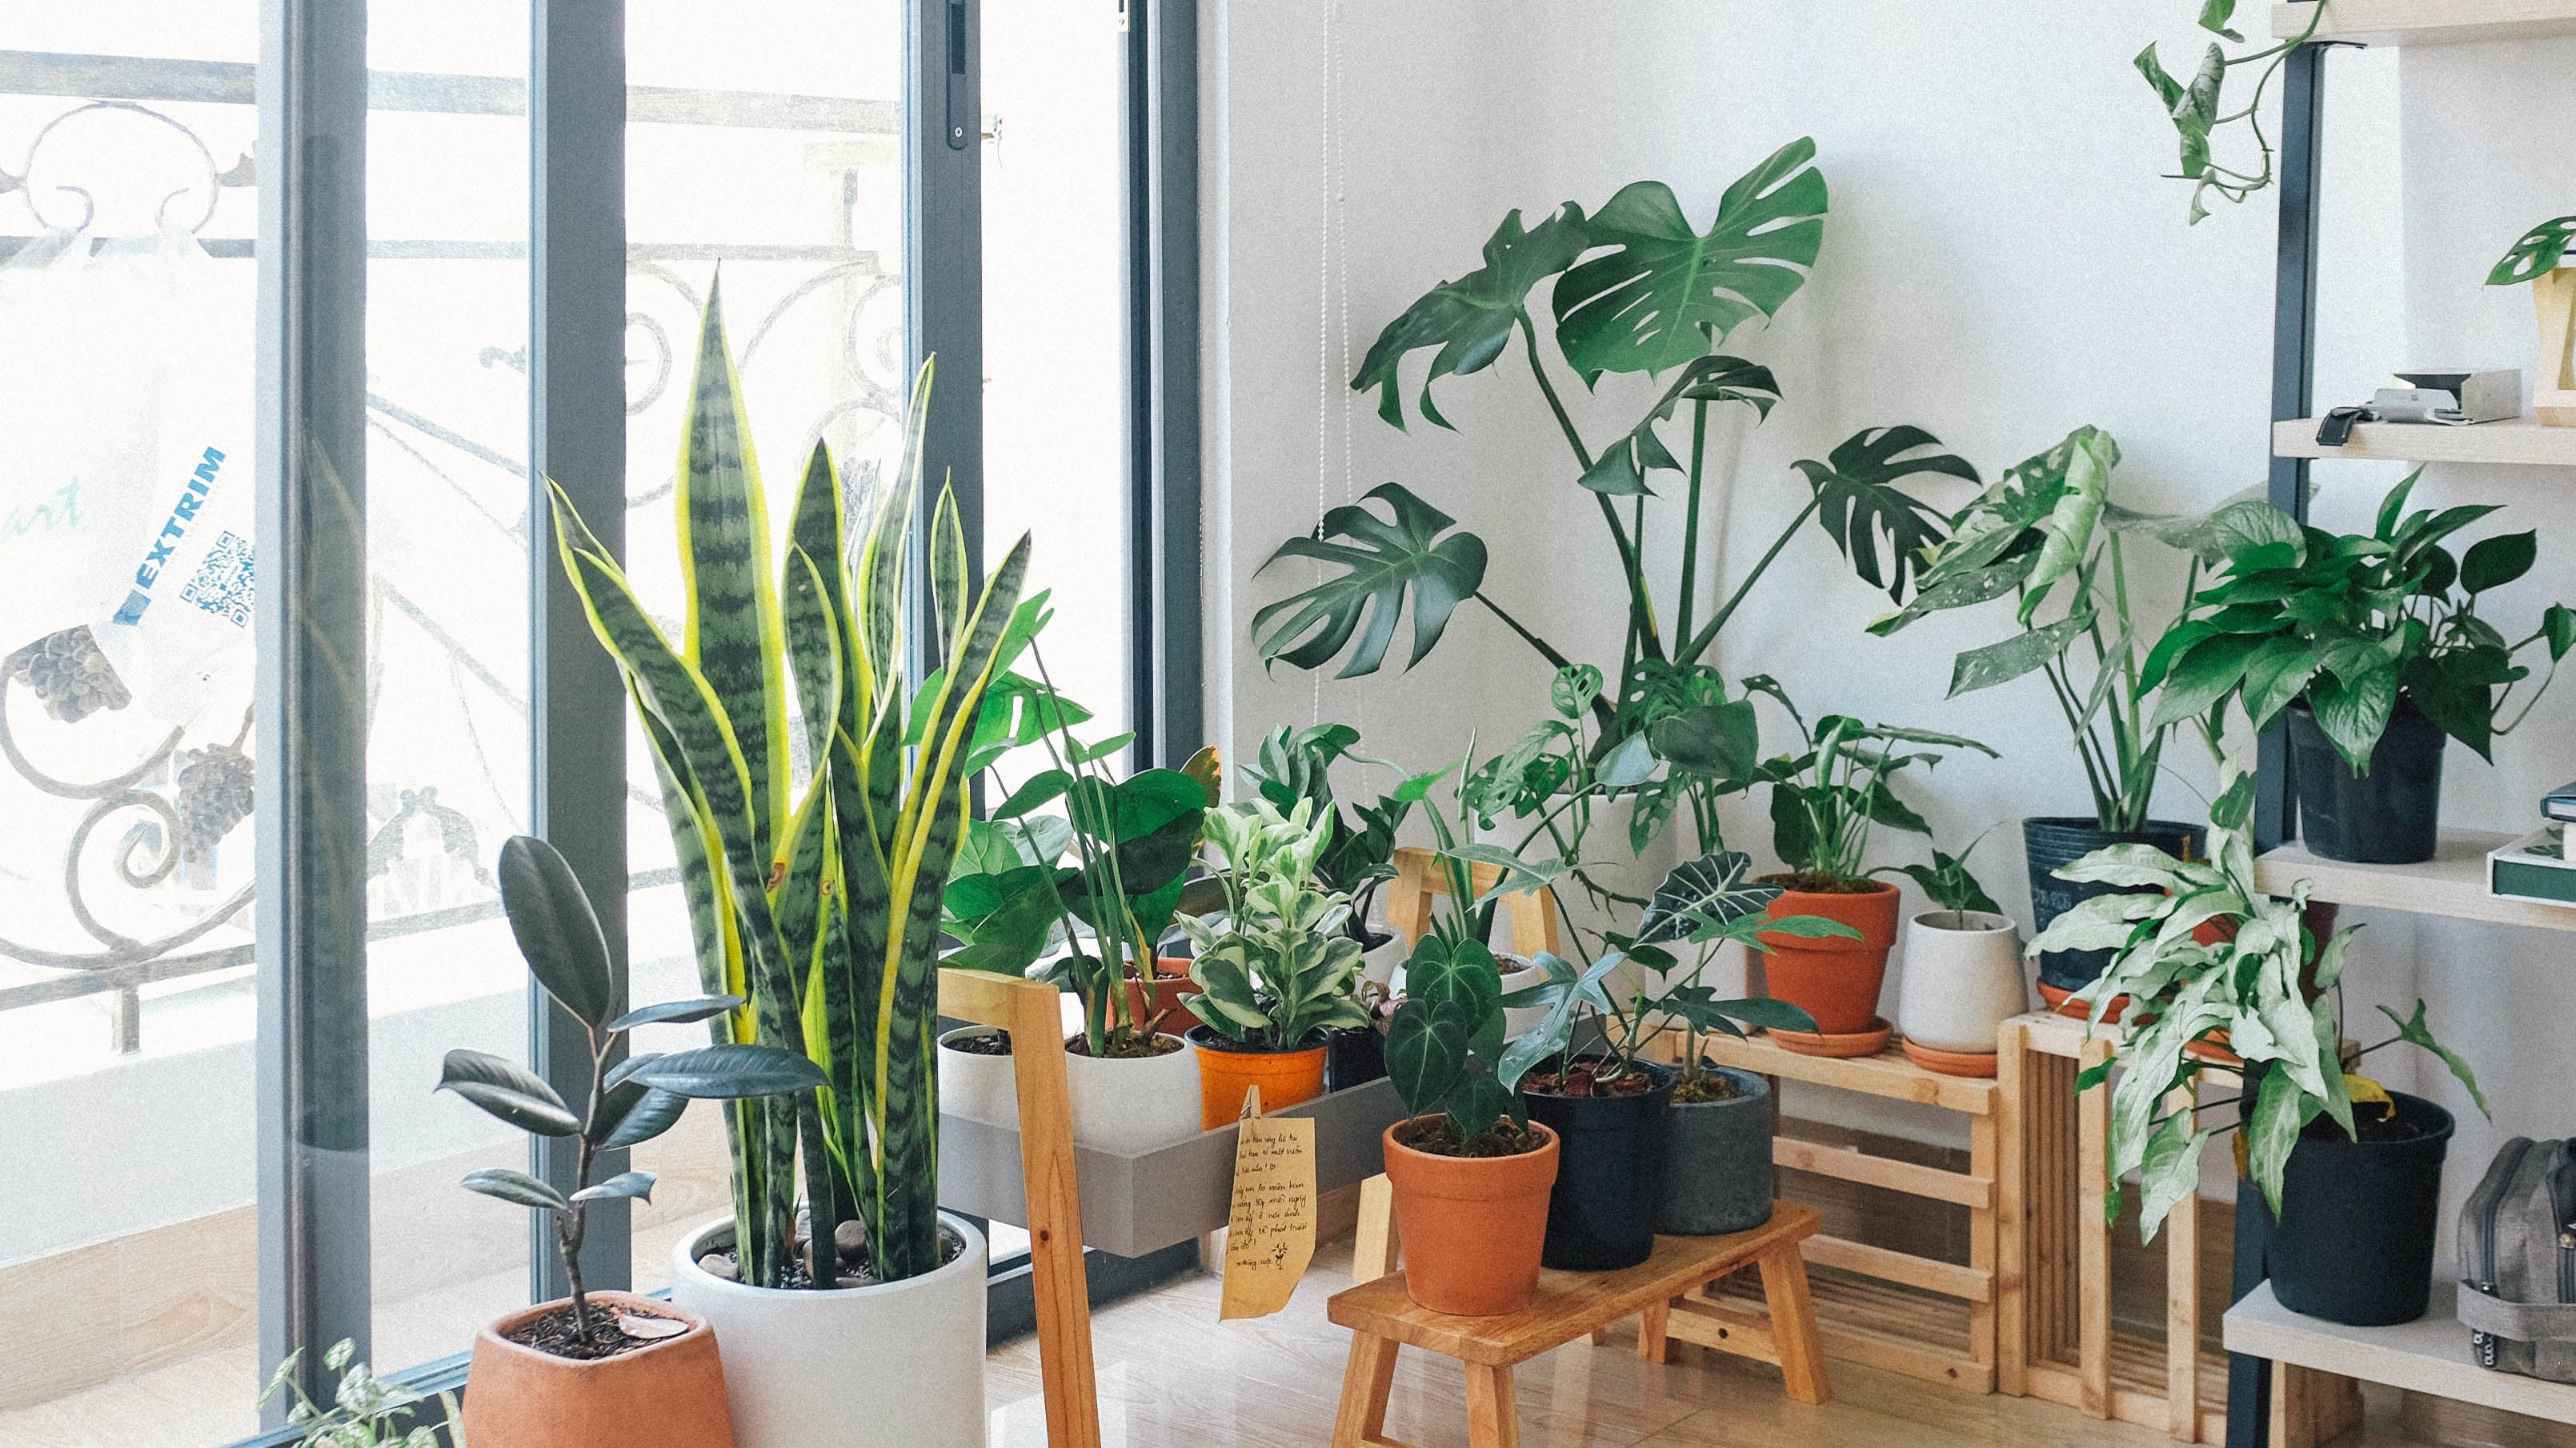 Ter essas 3 plantas positivas em sua casa ajudará você a melhorar a energia em seu lar, de acordo com o Feng Shui